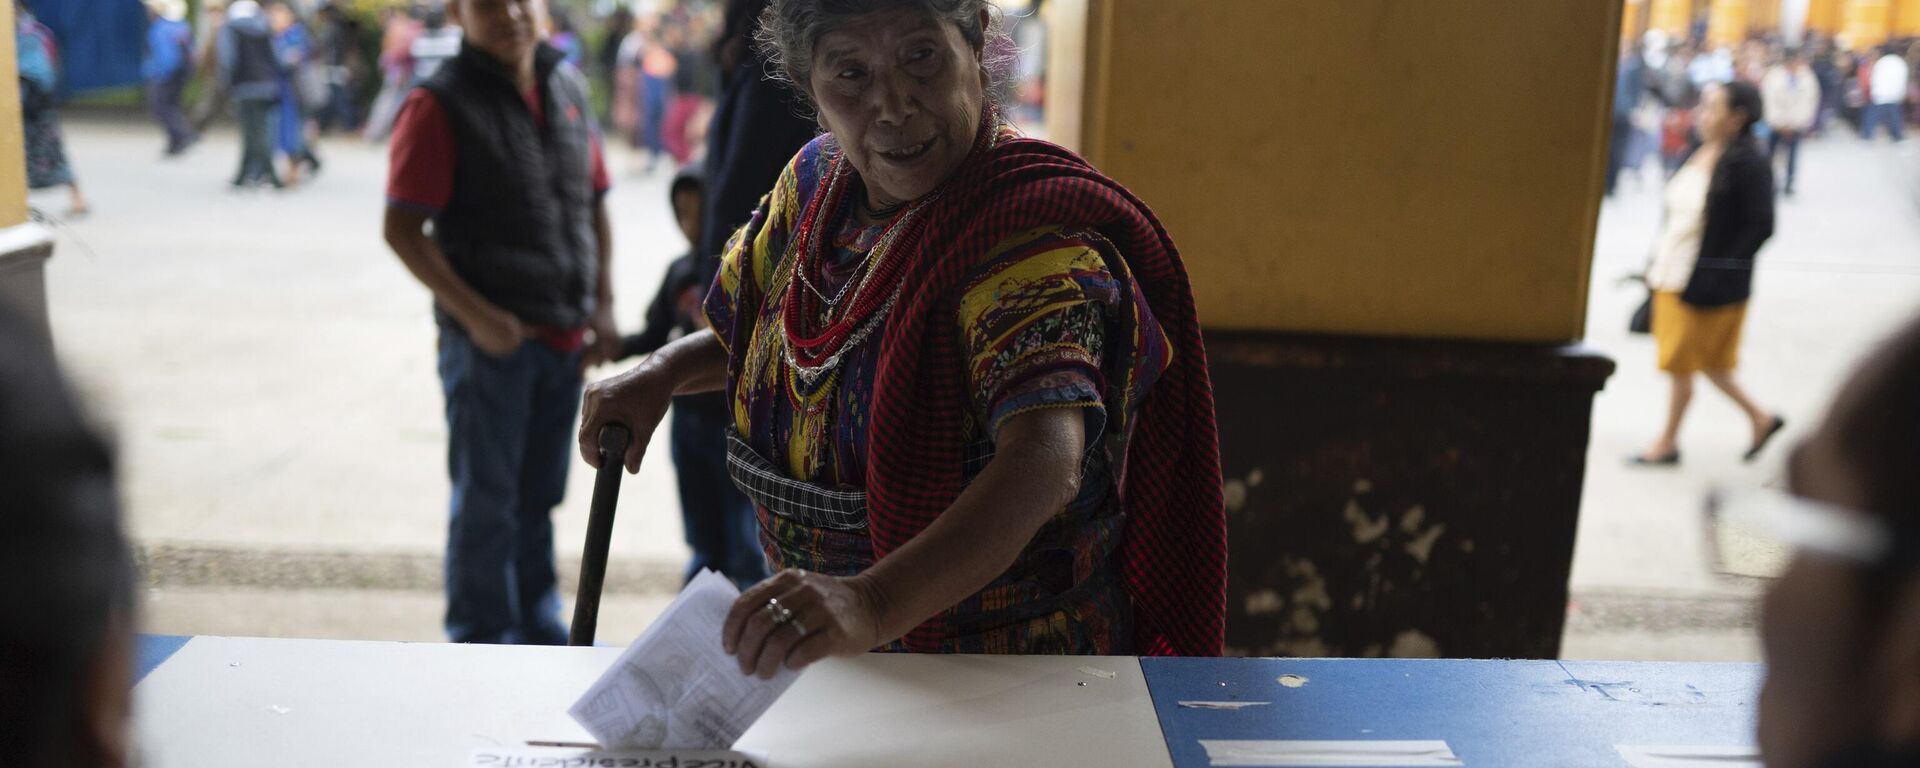 Las elecciones presidenciales en Guatemala se celebrarán este 25 de junio. - Sputnik Mundo, 1920, 24.06.2023